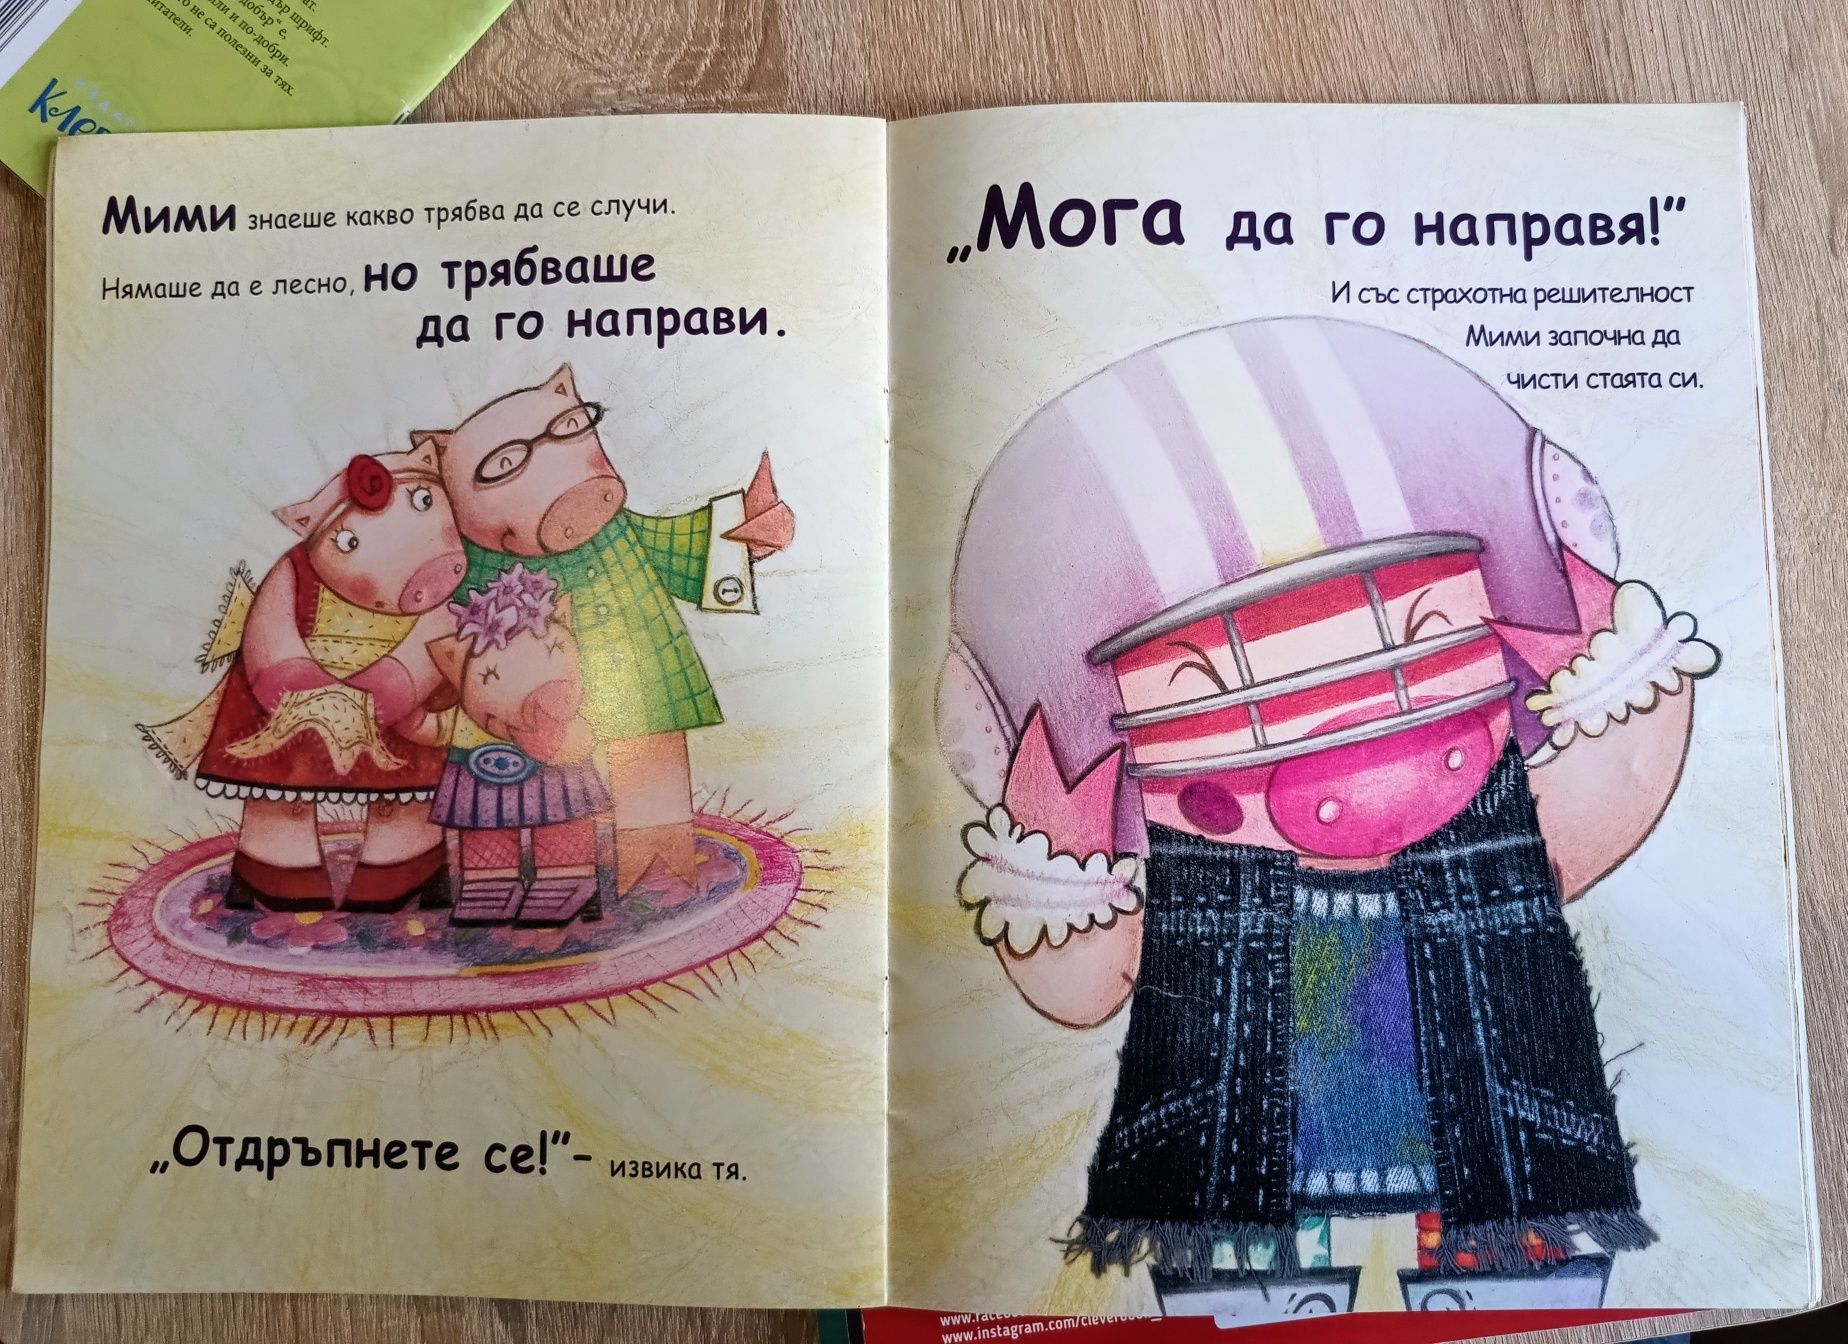 Детски книжки "Аз се уча"(Clever Book), "Финли и Патсън"